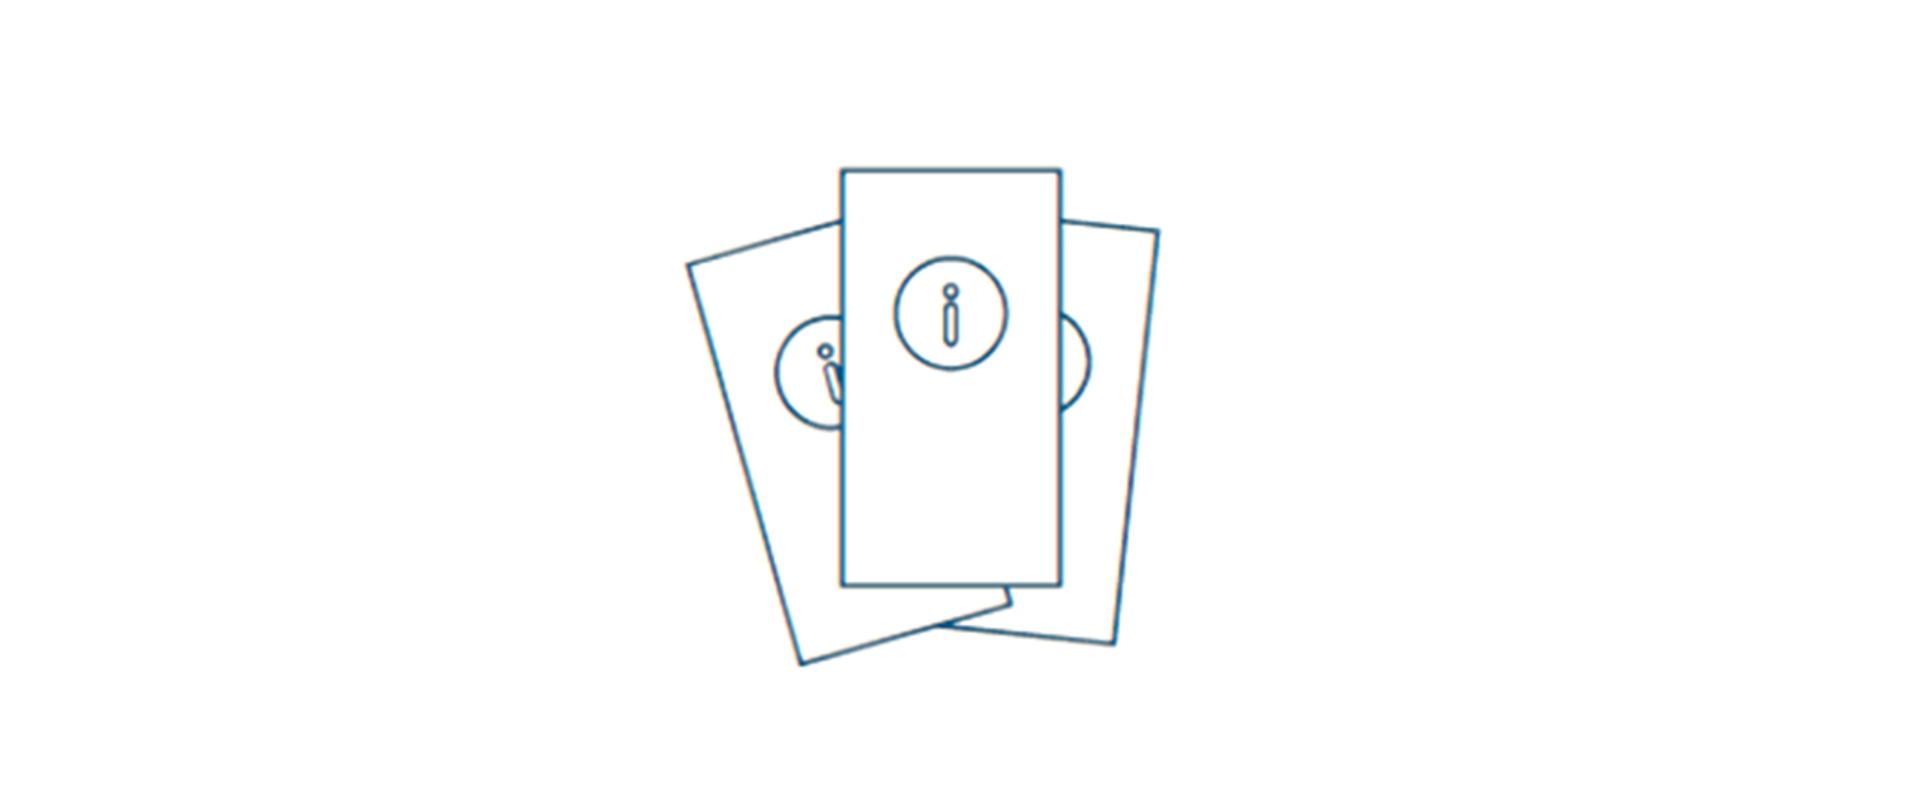 Rysunkowa grafika poglądowa przedstawiająca trzy ulotki ze znakiem "I" 